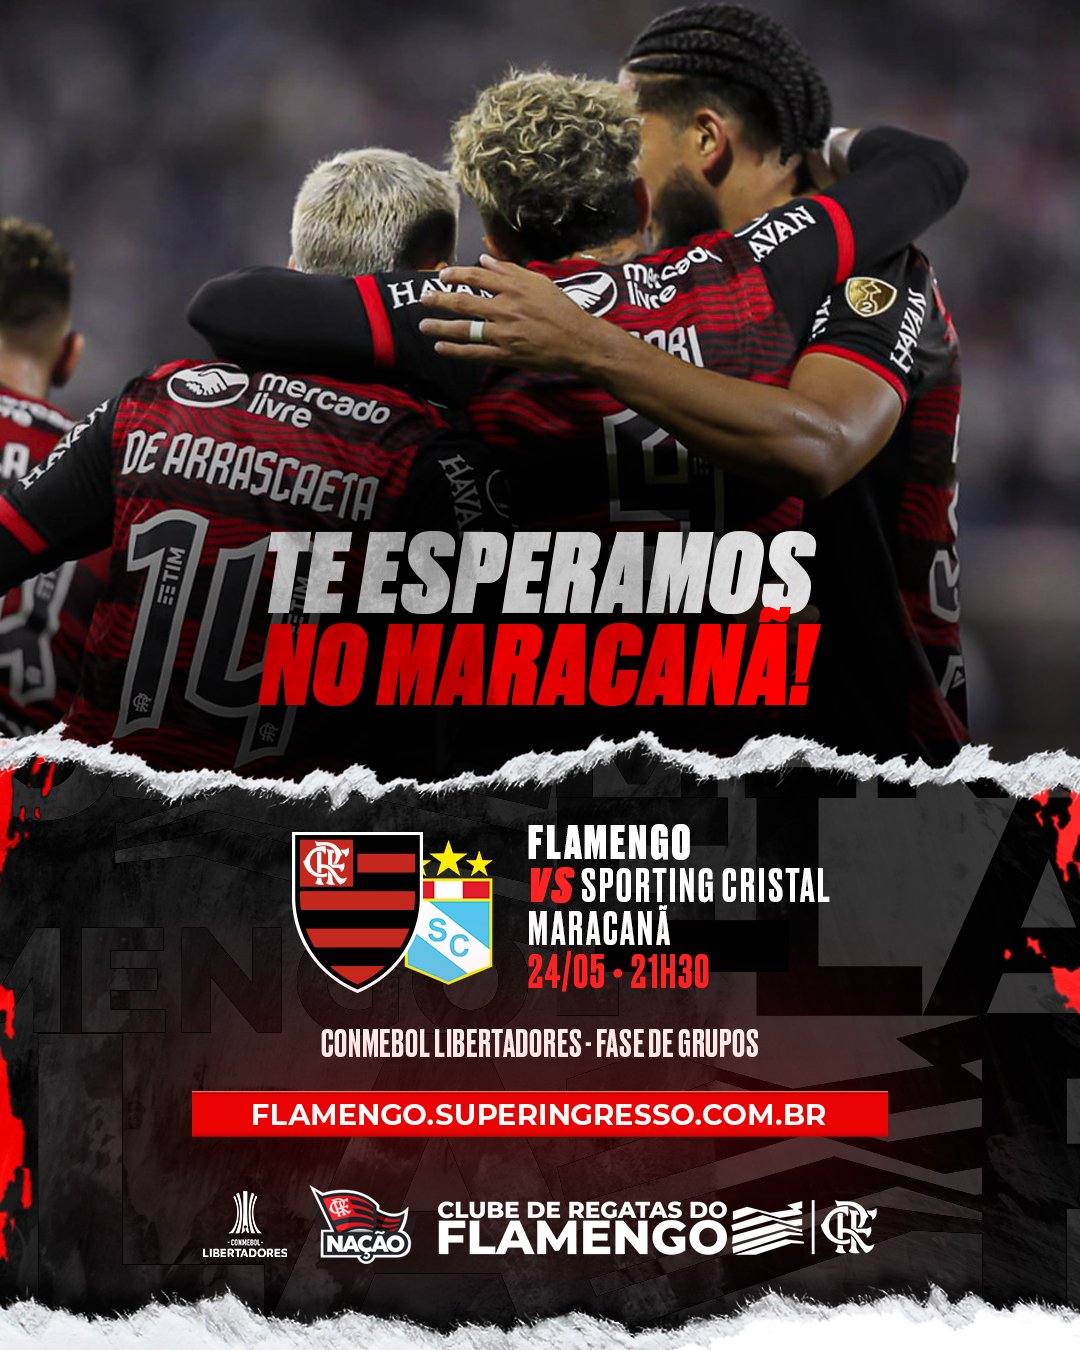 Clube de Regatas do Flamengo - HOJE TEM MENGÃO NA CONMEBOL